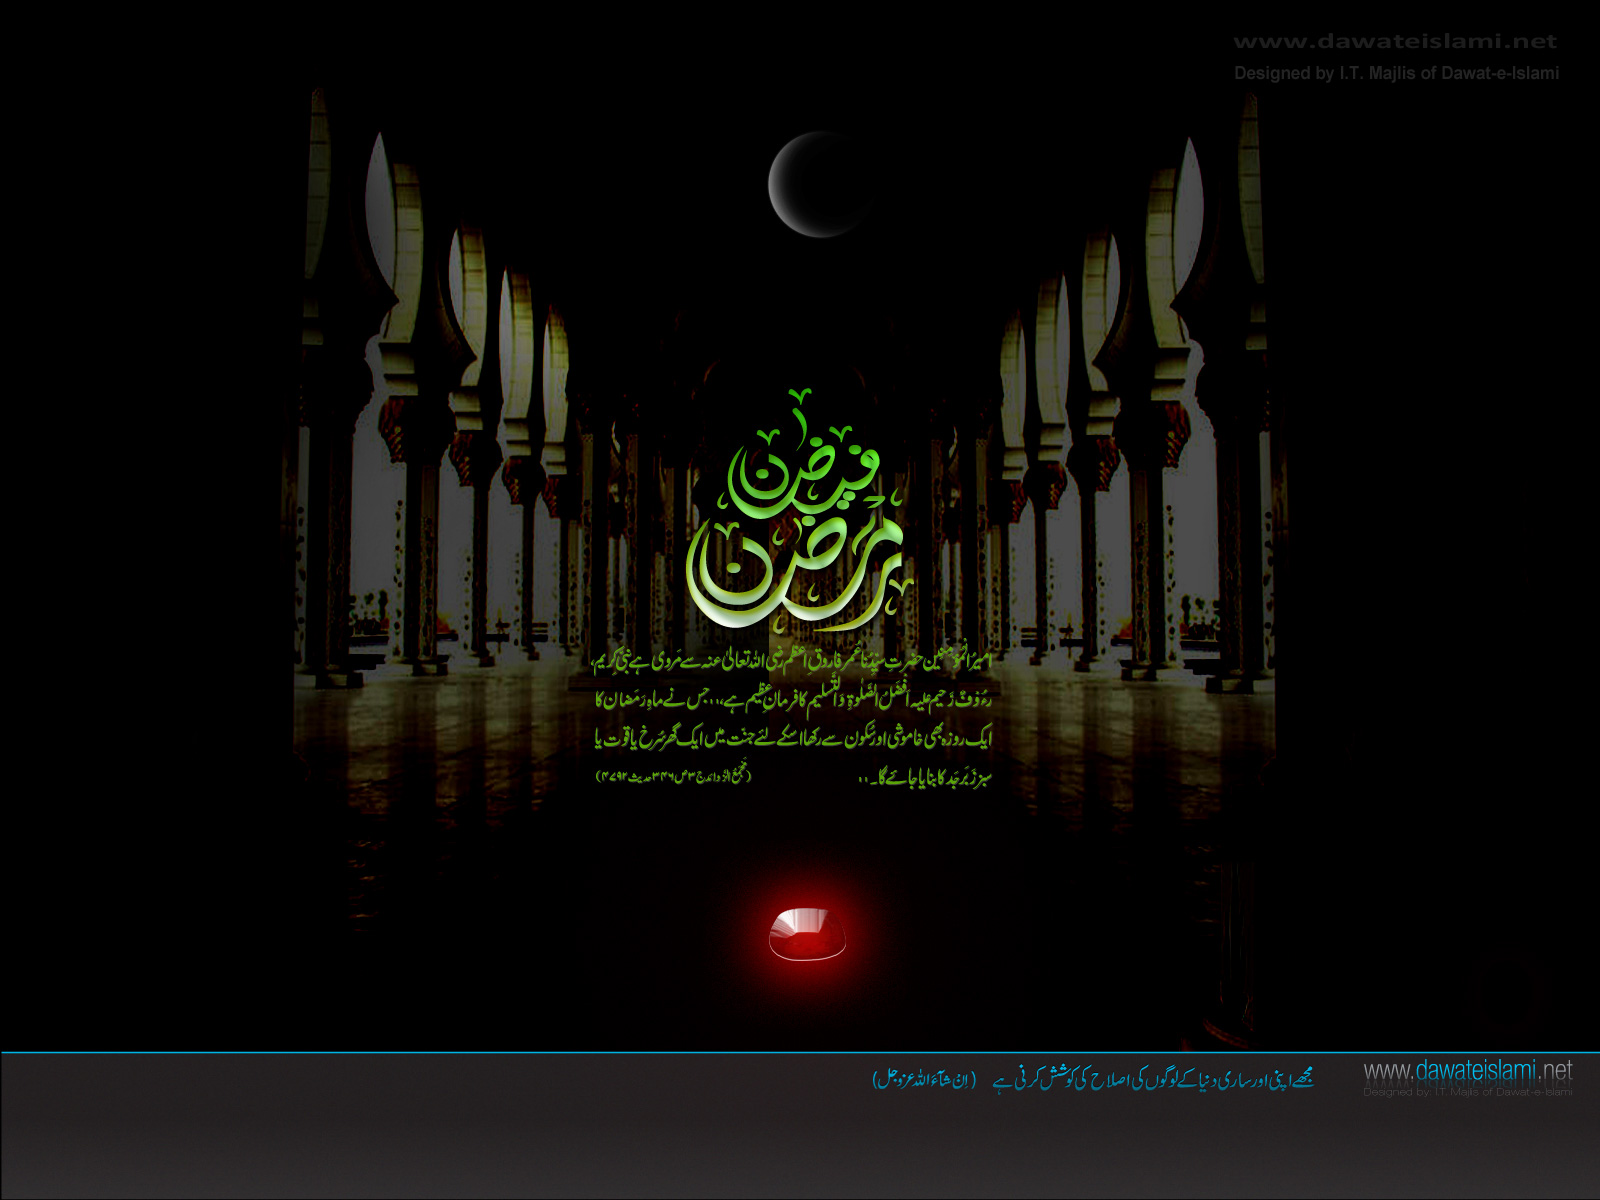 fond d'écran ramadan de haute qualité,texte,conception graphique,lumière,ténèbres,police de caractère